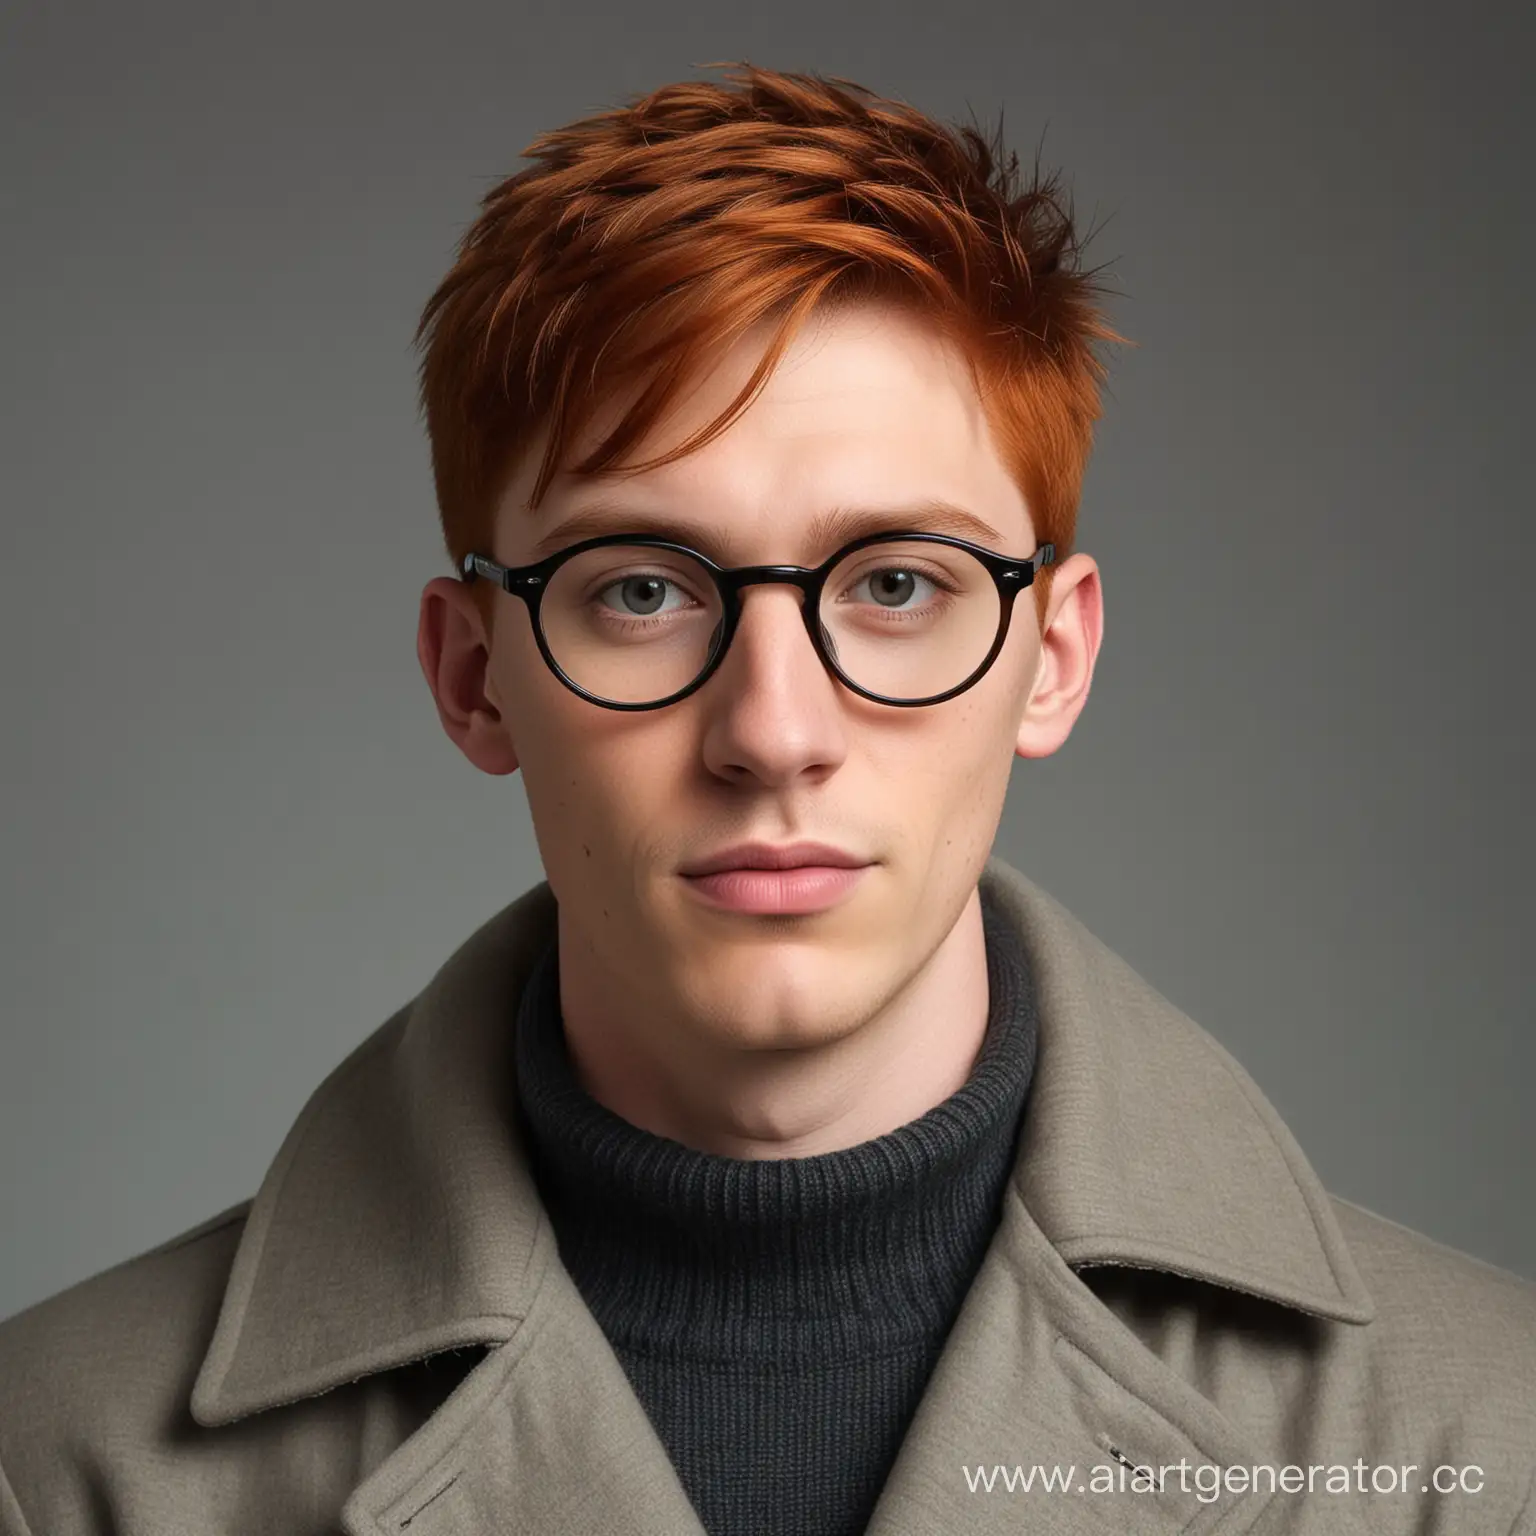 Портрет худого молодого человека в чёрных круглых очках. Рыжий, очень коротко подстрижен, на щеках небольшая щетина. Одет в пальто и серый свитер.